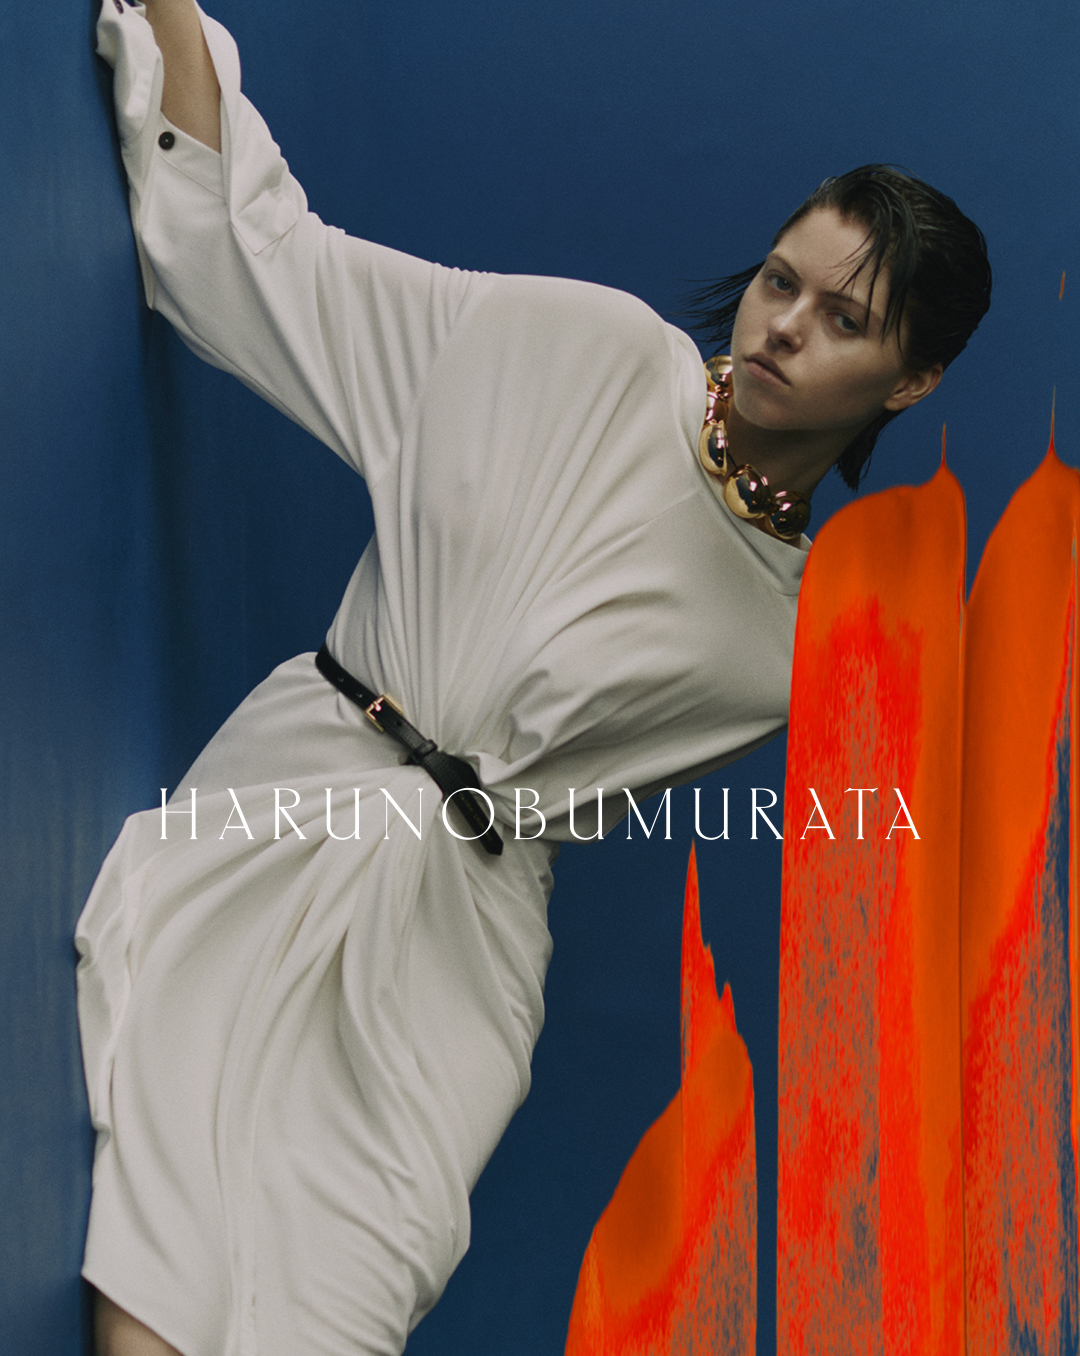 HARUNOBUMURATA Official Site